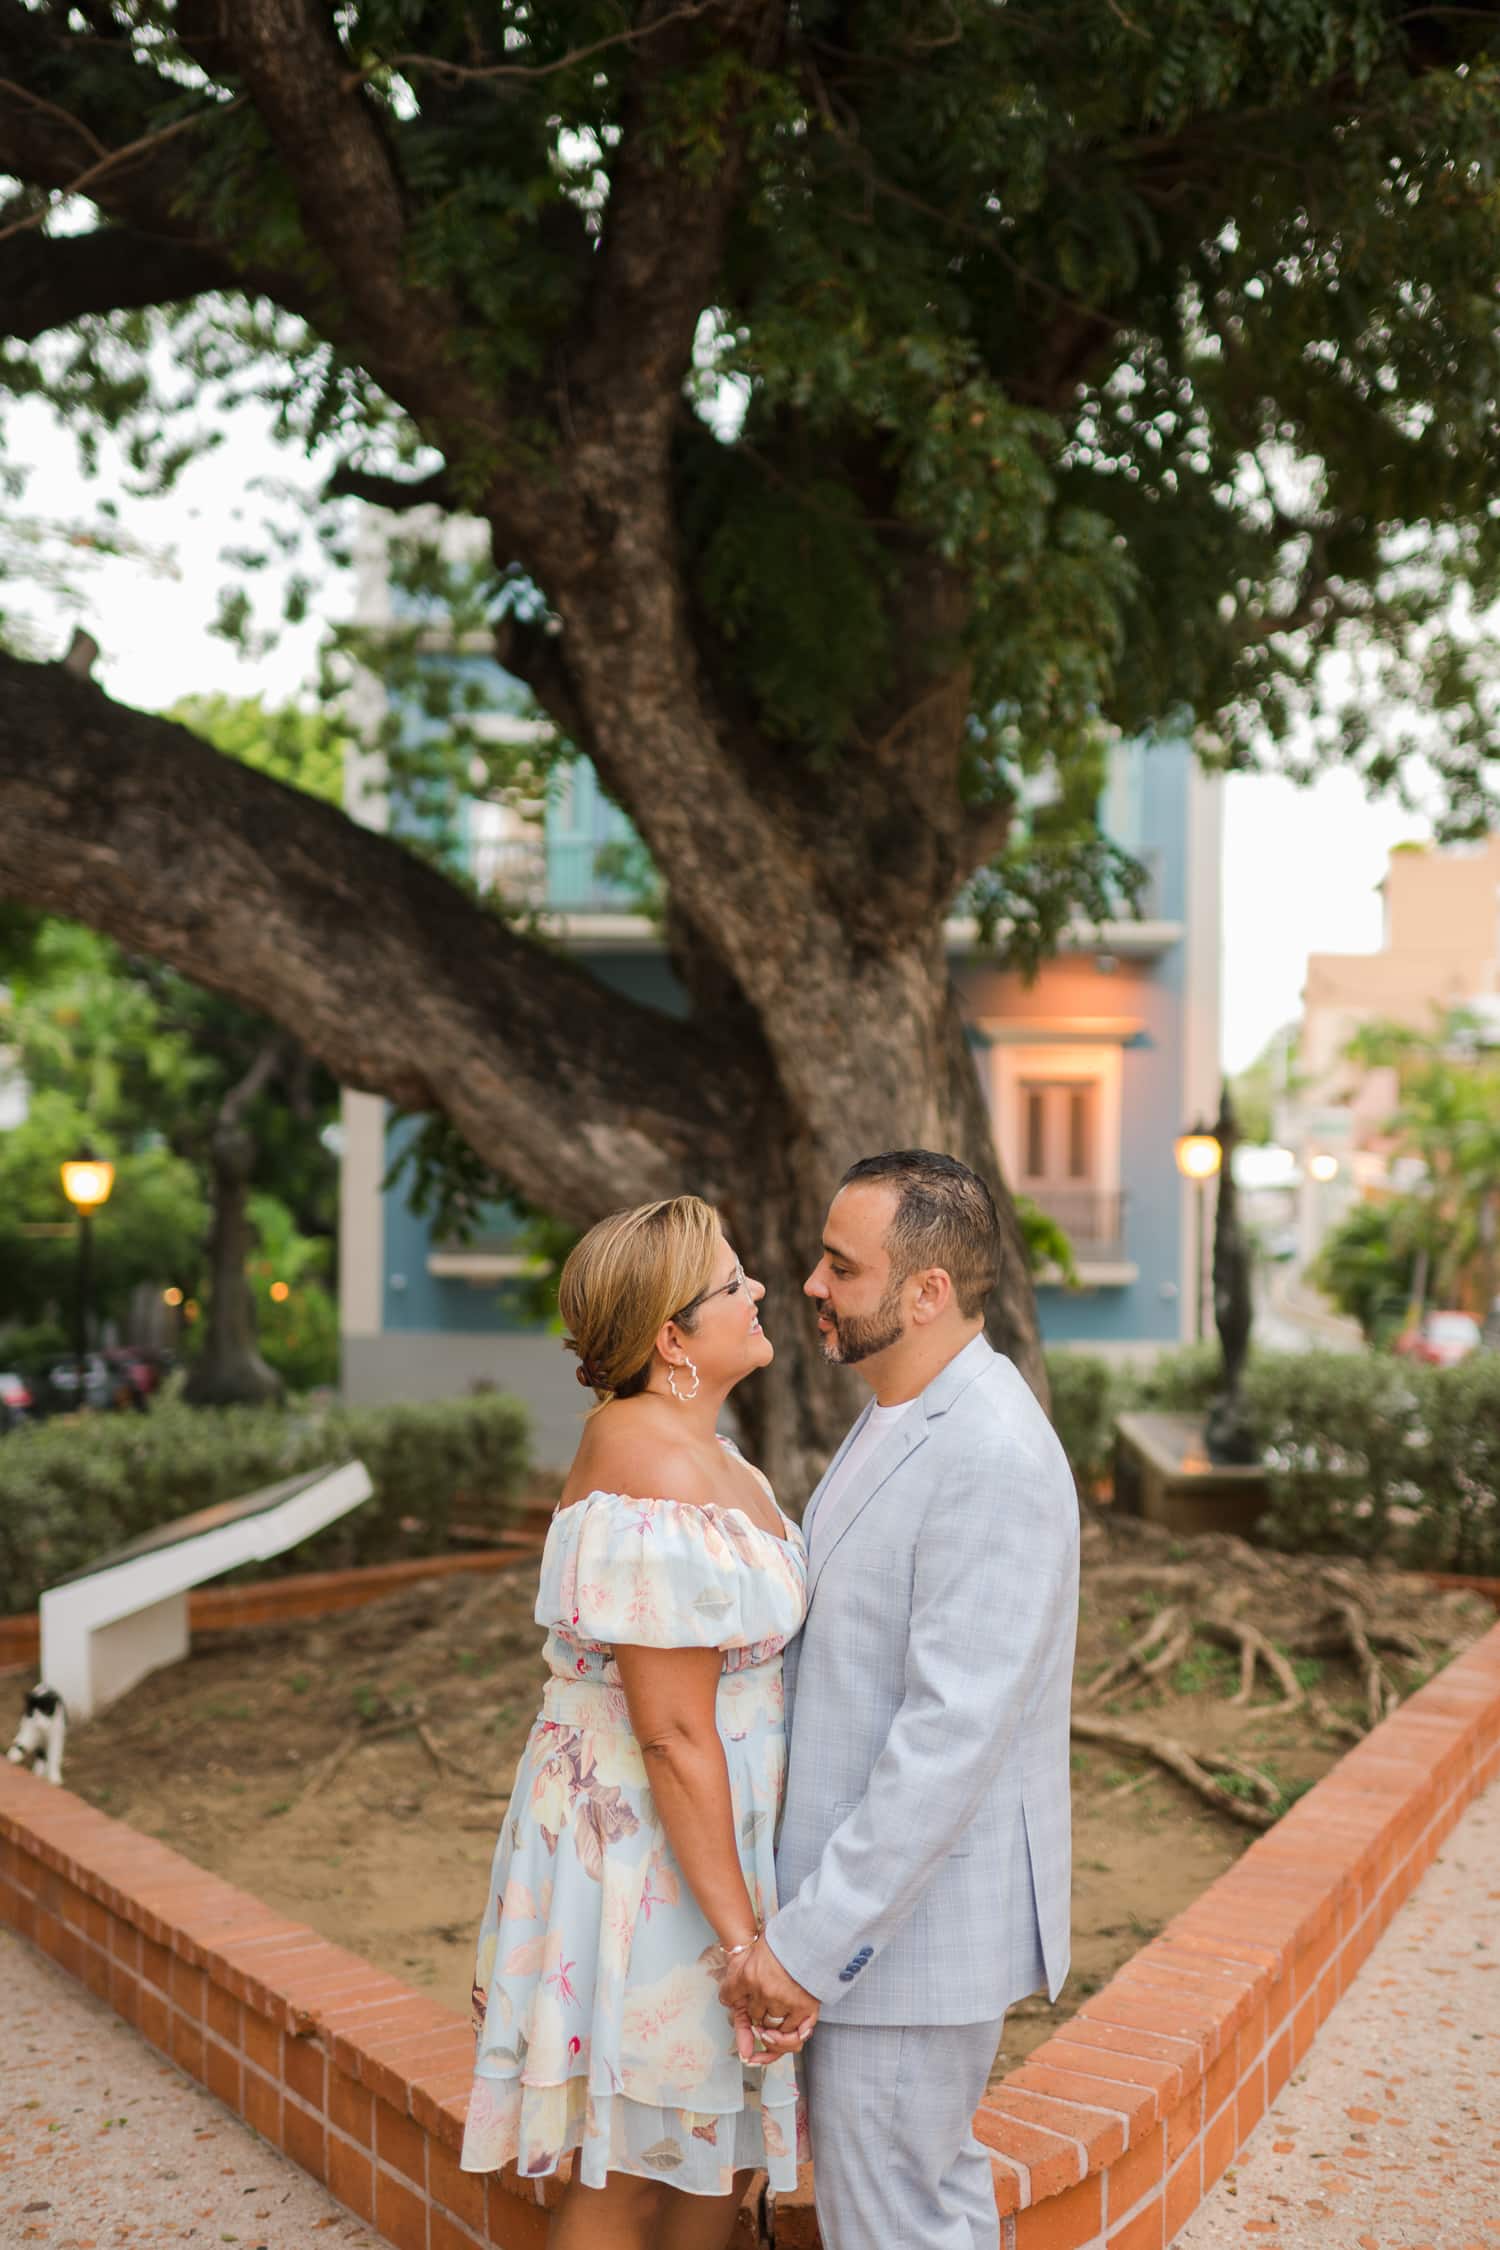 newlywed honeymoon photography at el morro and old san juan puerto rico